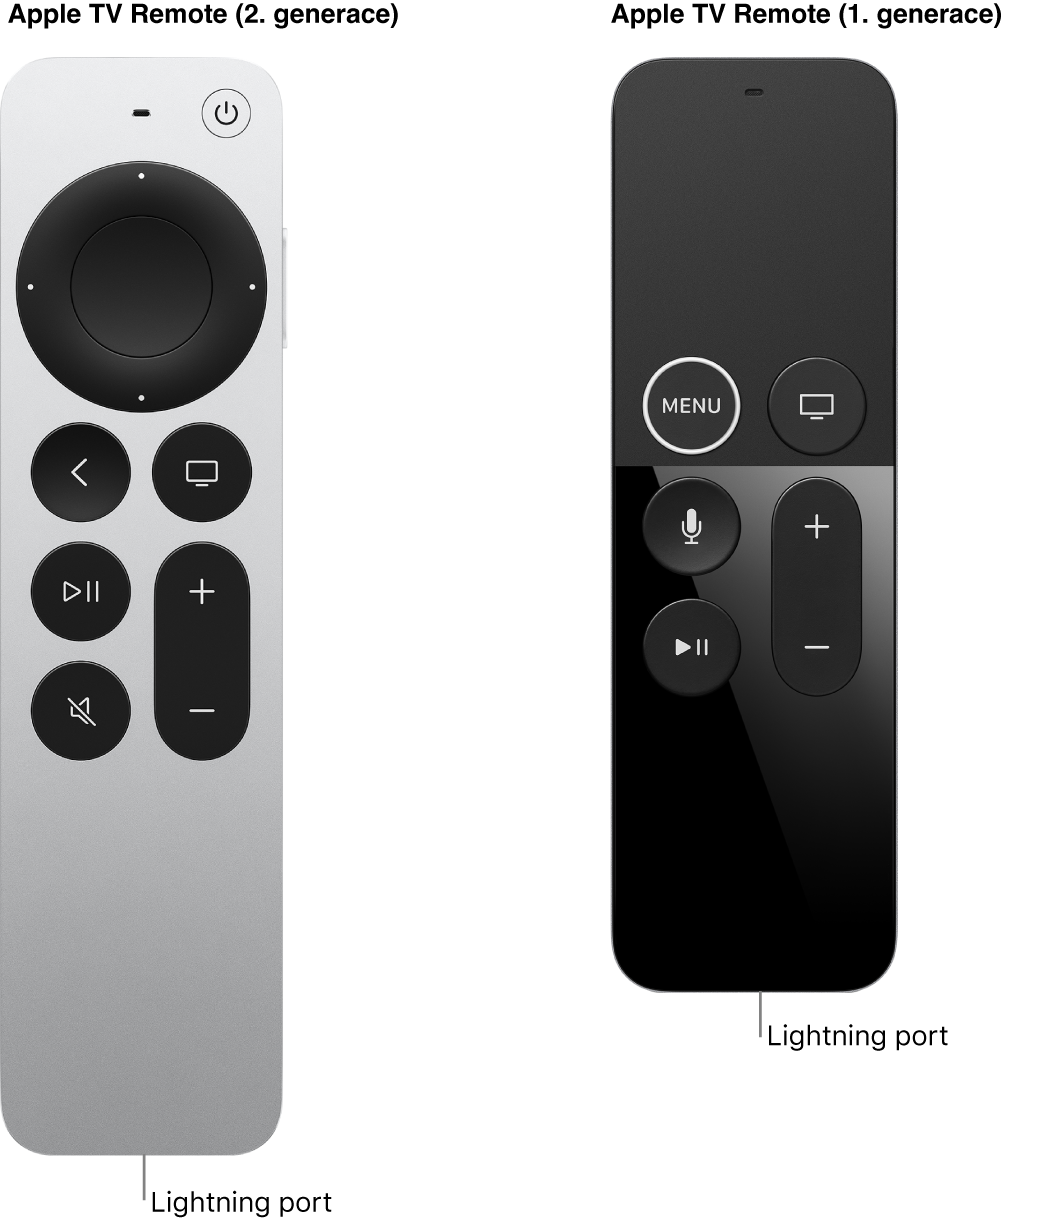 Obrázek ovladače Apple TV 2. generace a ovladače Apple TV 1. generace s konektorem Lightning